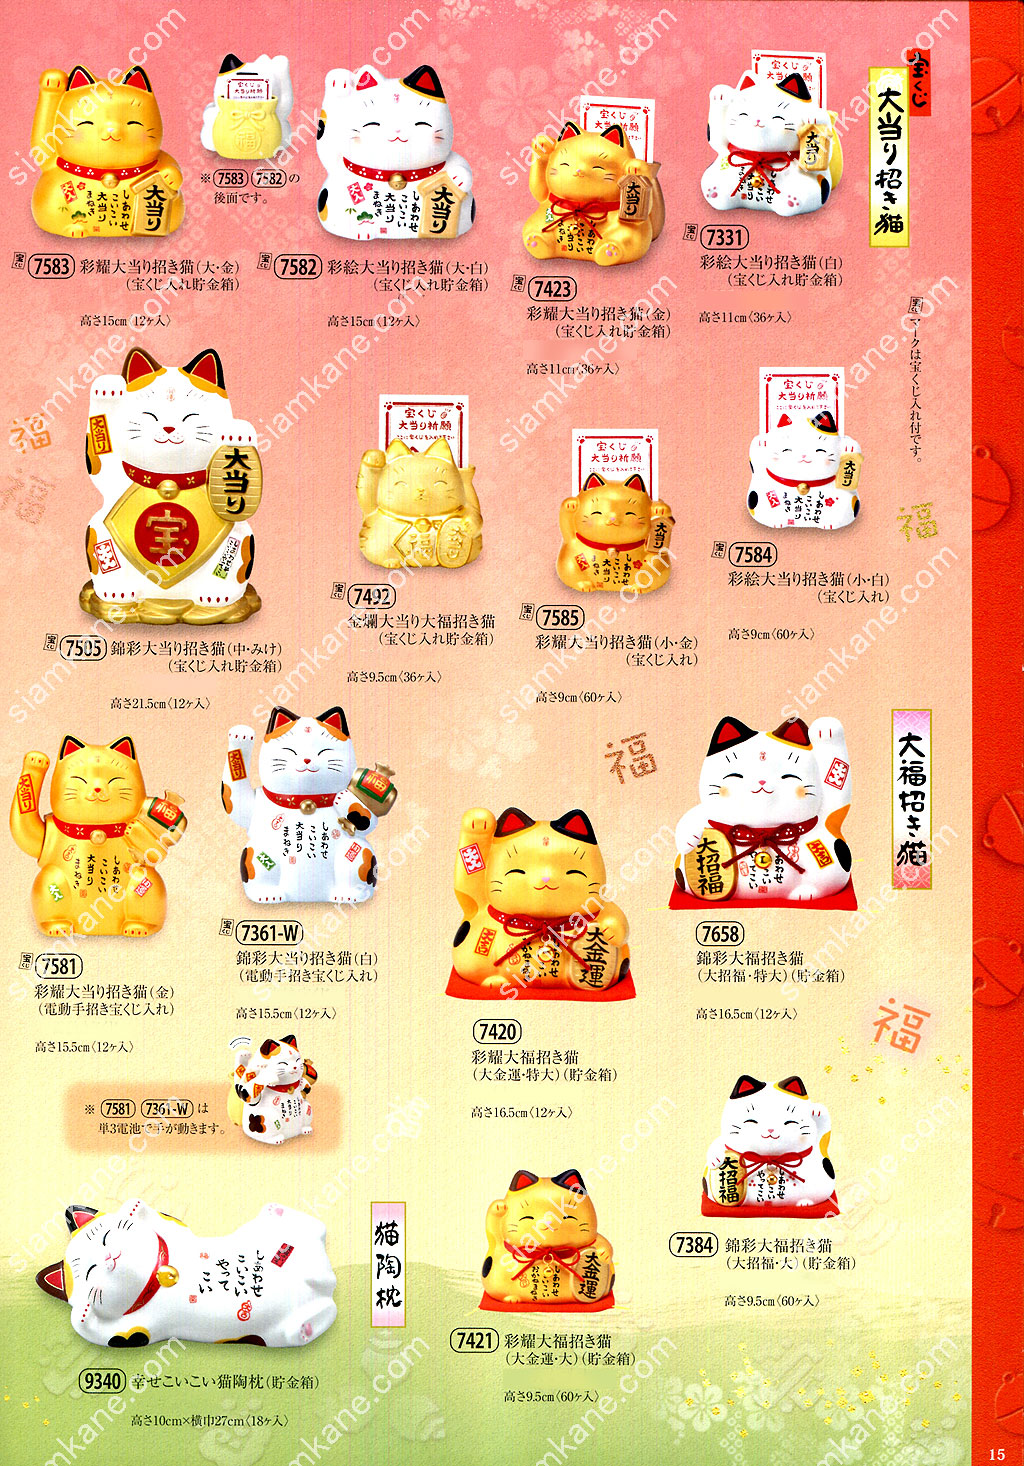 แคตตาล็อก แมวกวัก แมวกวักญี่ปุ่น แมวญี่ปุ่น แมวกวักนำโชค หน้า 15